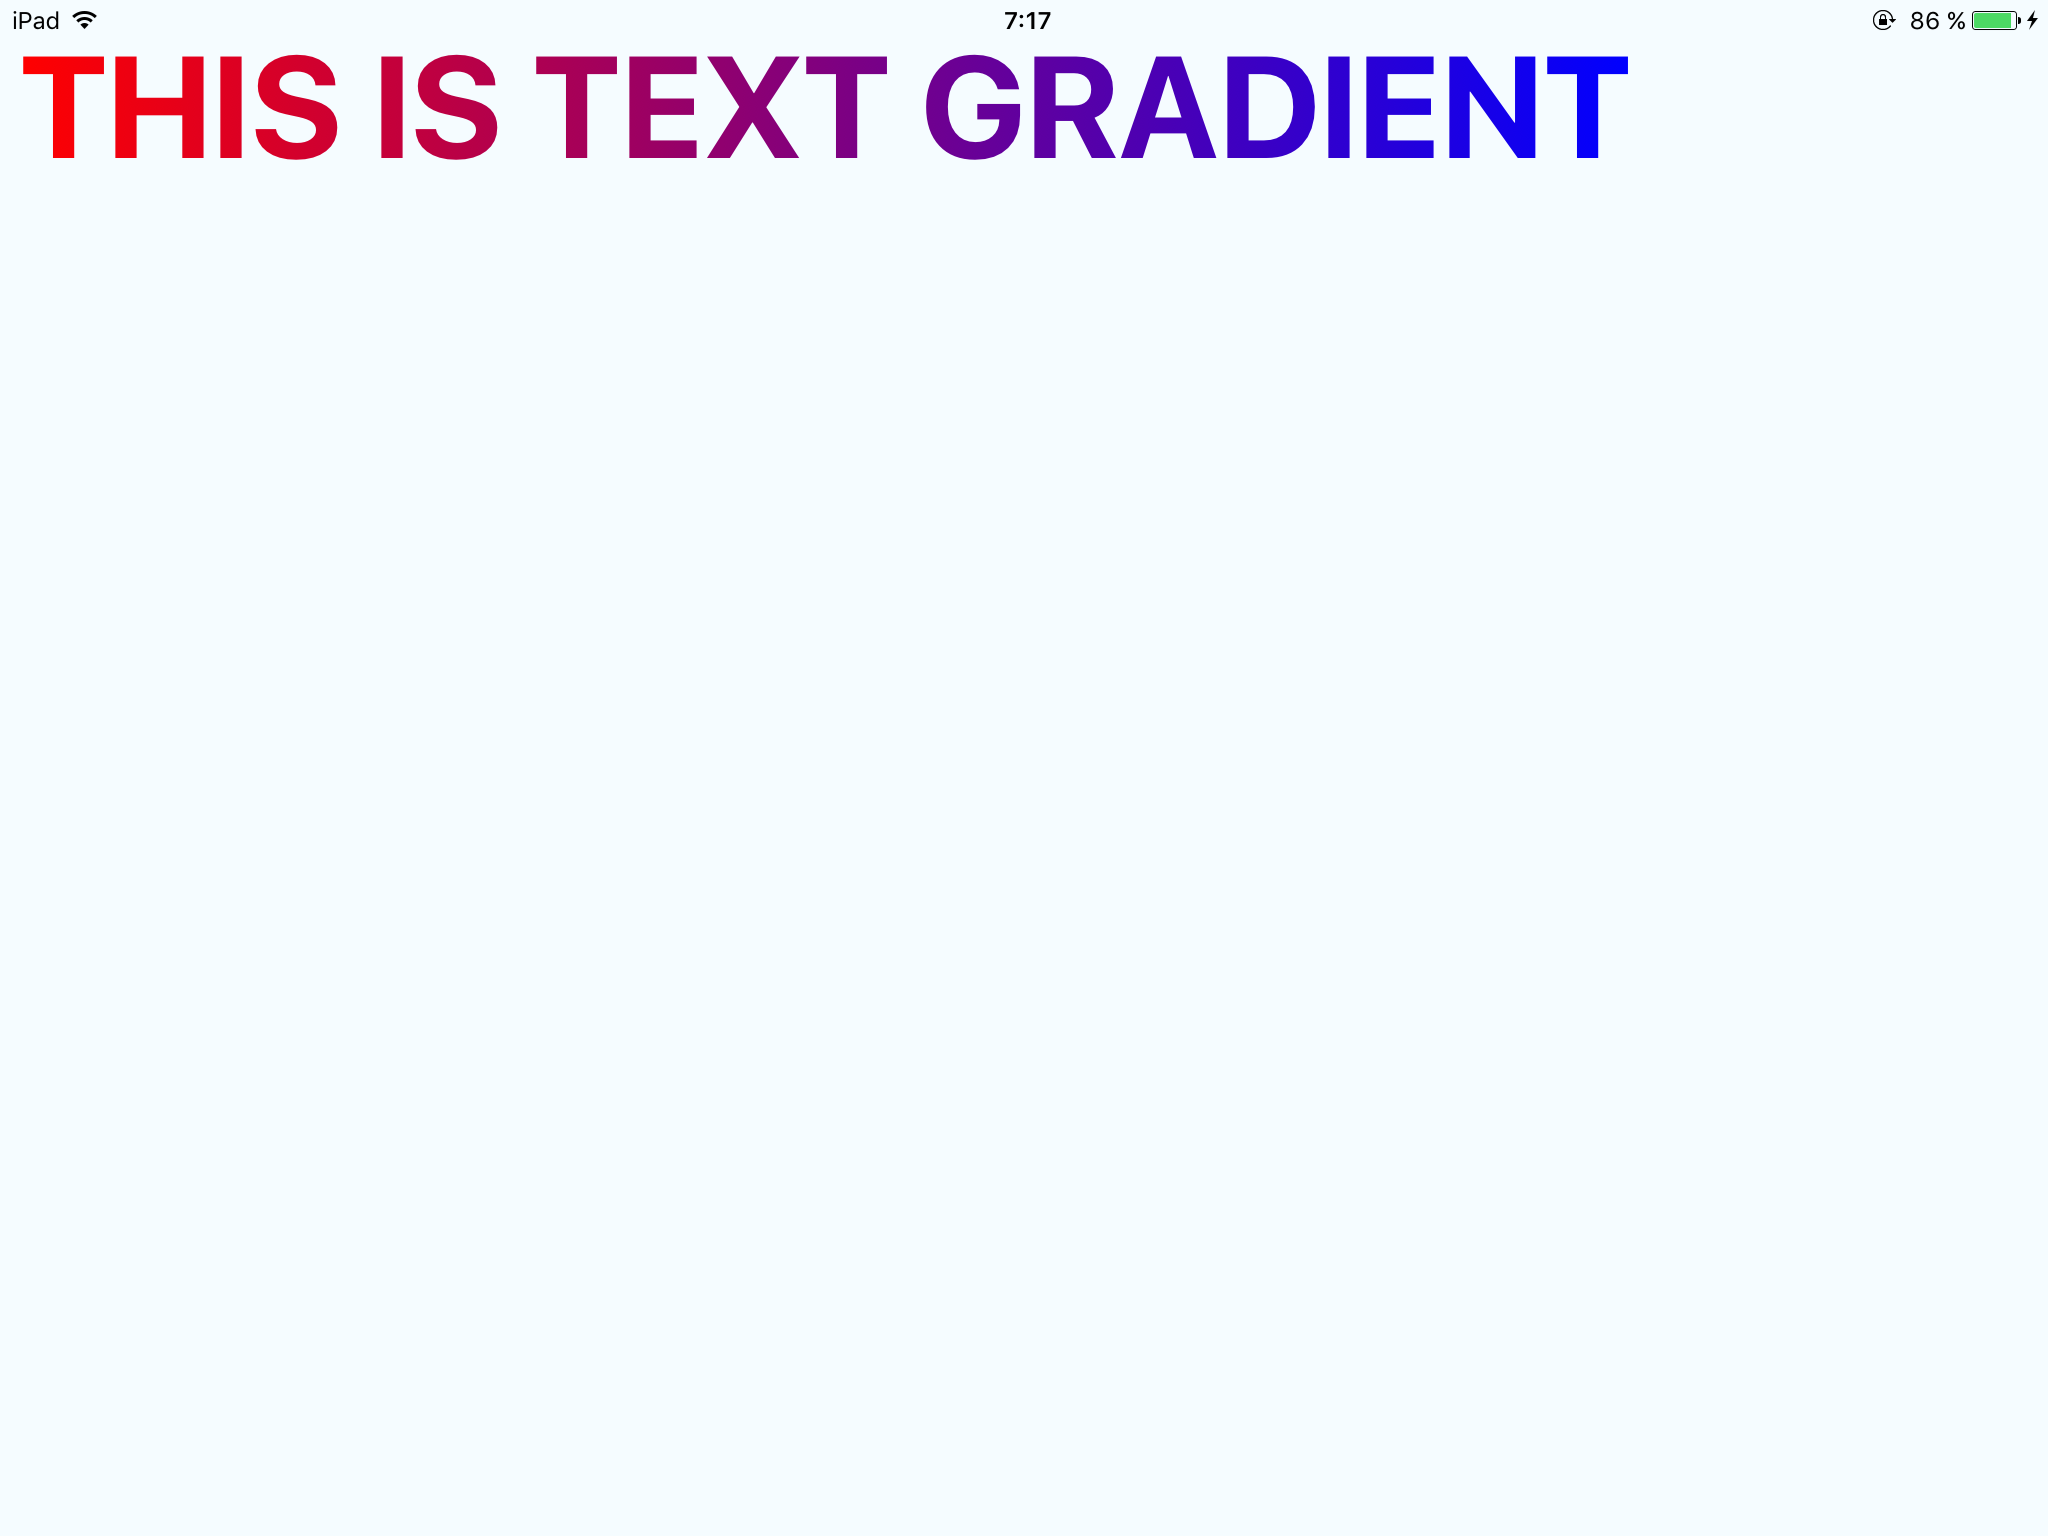 React Native Text Gradient: Với React Native Text Gradient, bạn có thể tạo ra những hiệu ứng gradient cho văn bản. Điều này giúp văn bản nổi bật hơn trong trang web của bạn và thu hút sự chú ý của khách hàng. Bạn có thể dễ dàng tạo các hiệu ứng gradient cho văn bản một cách nhanh chóng và tiện lợi.